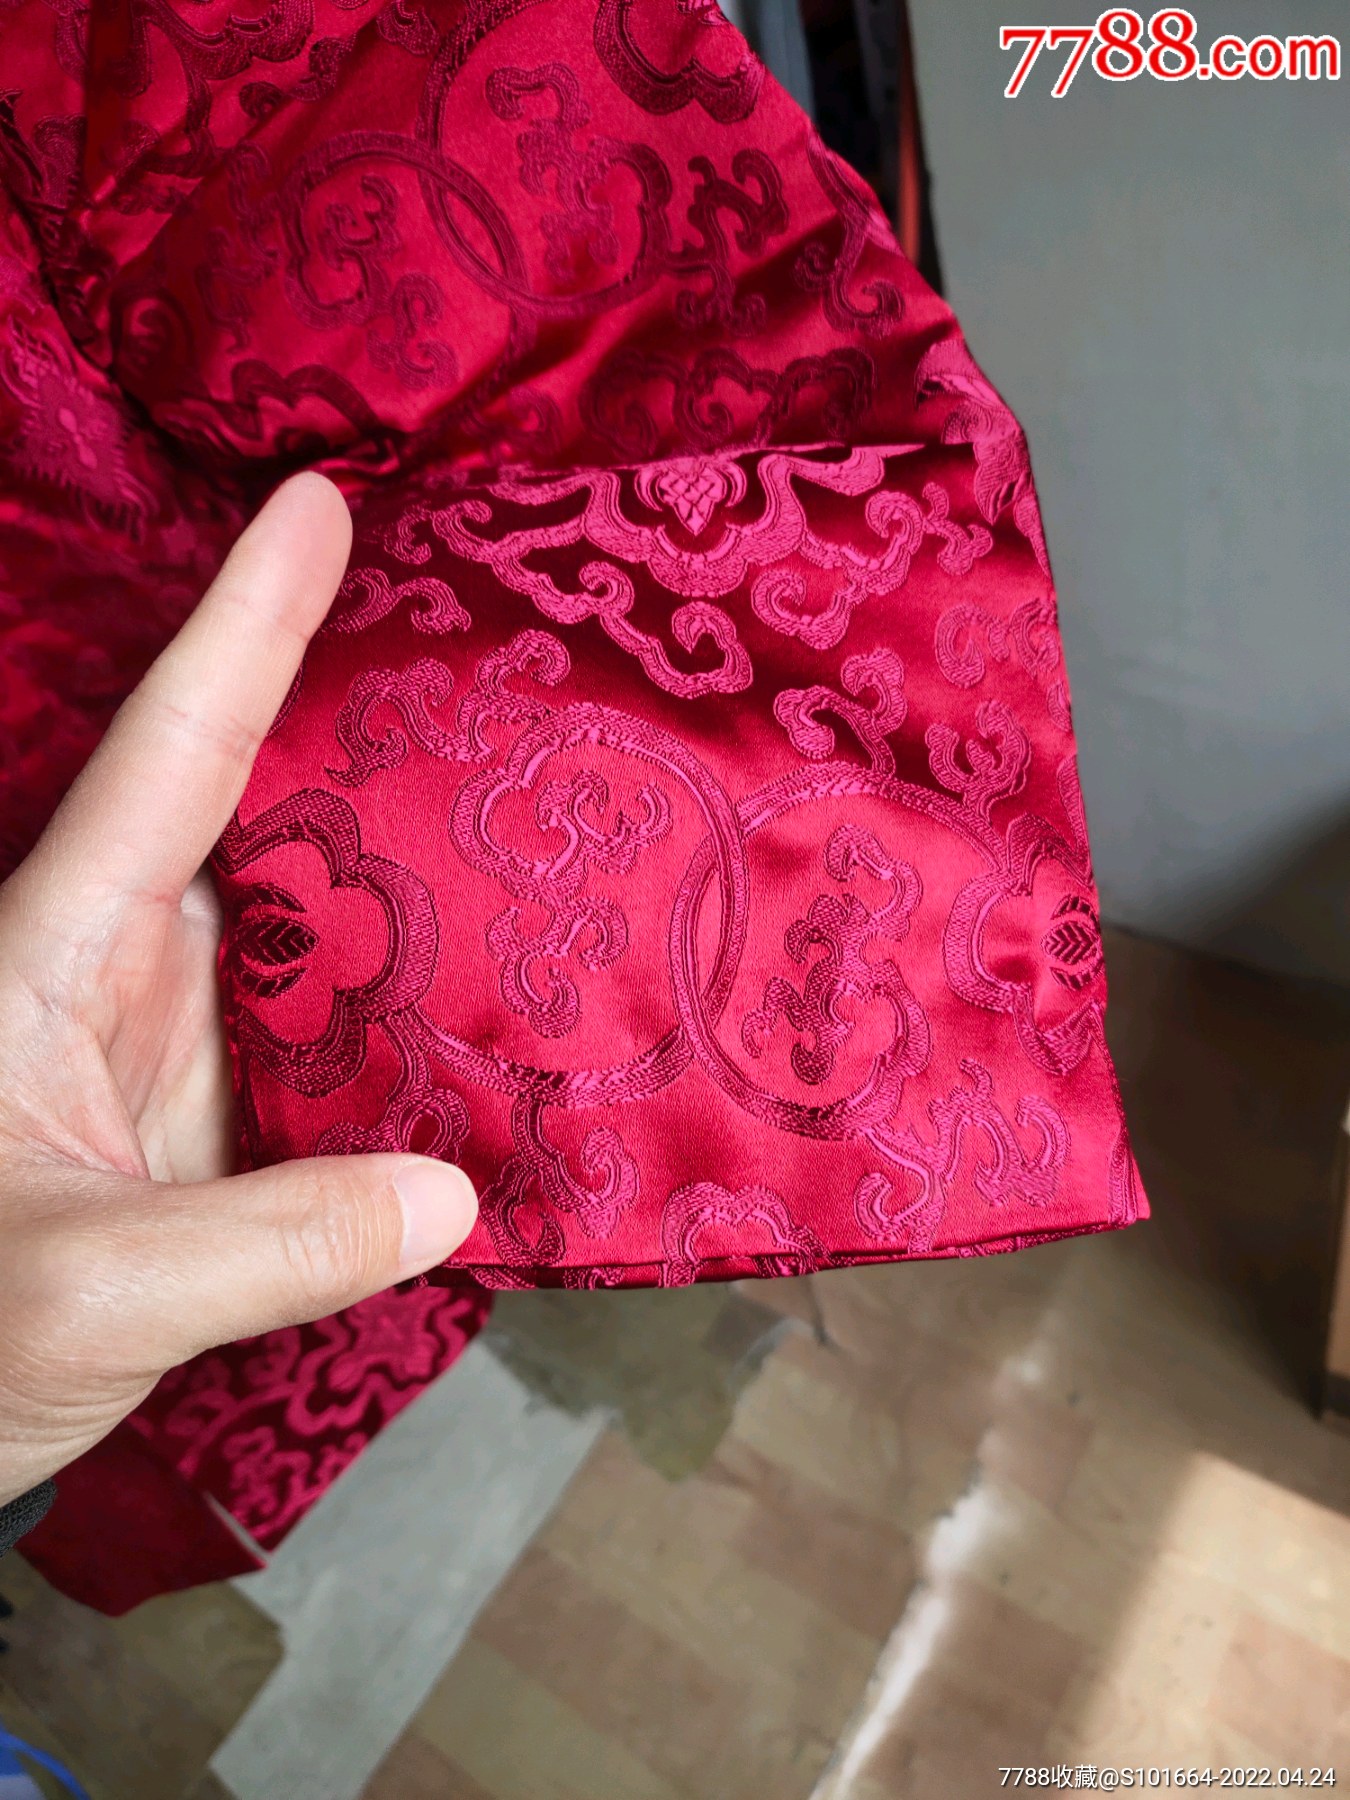 鲜艳的丝绸棉袄发泄图片